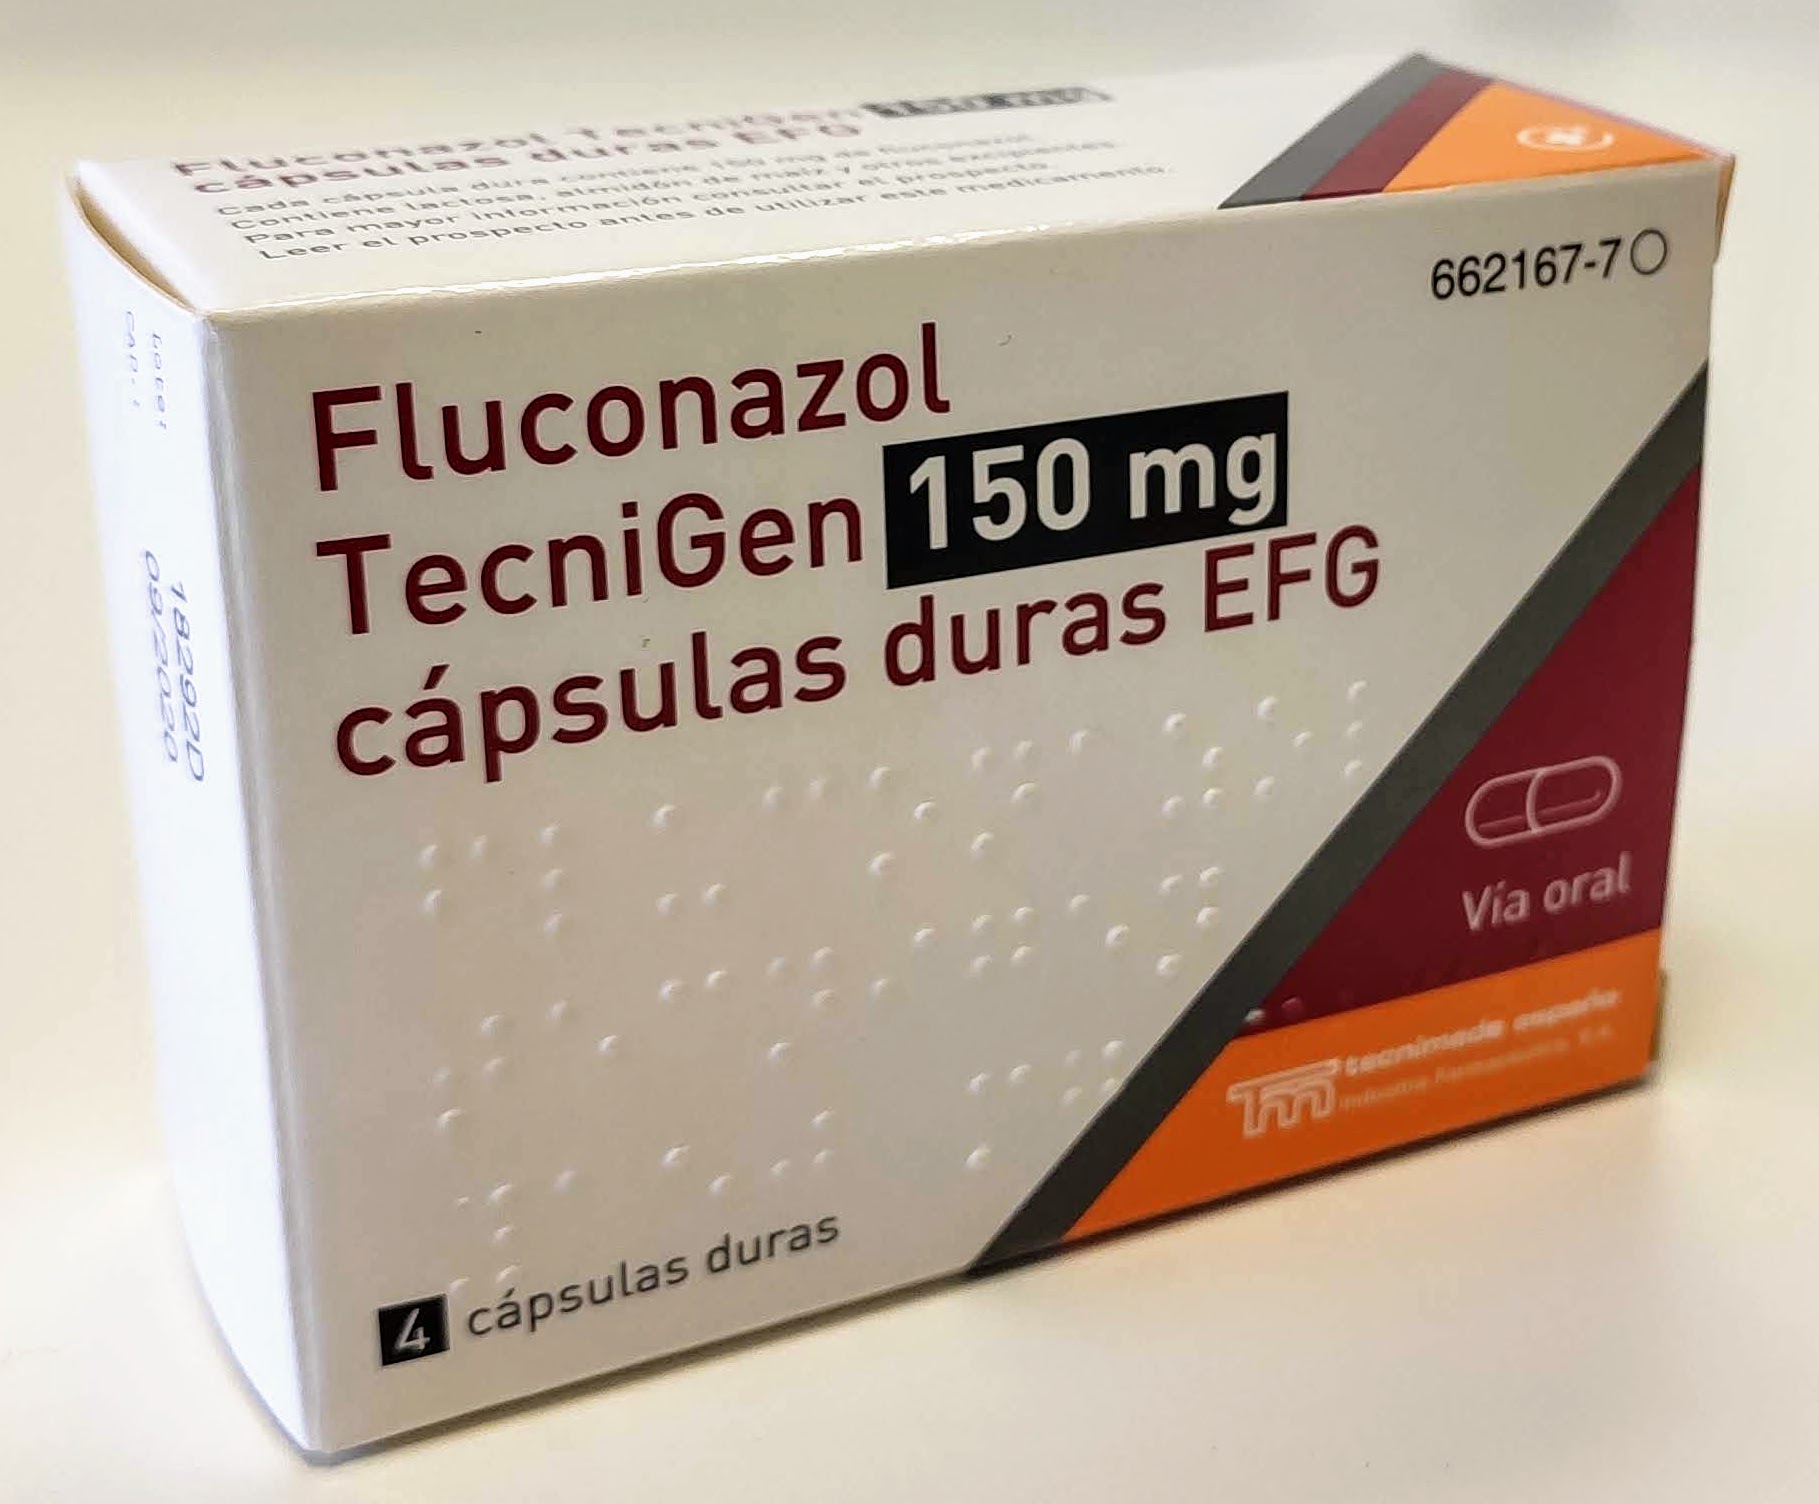 FLUCONAZOL TECNIGEN EFG 150 mg 4 CAPSULAS - Farmacéuticos